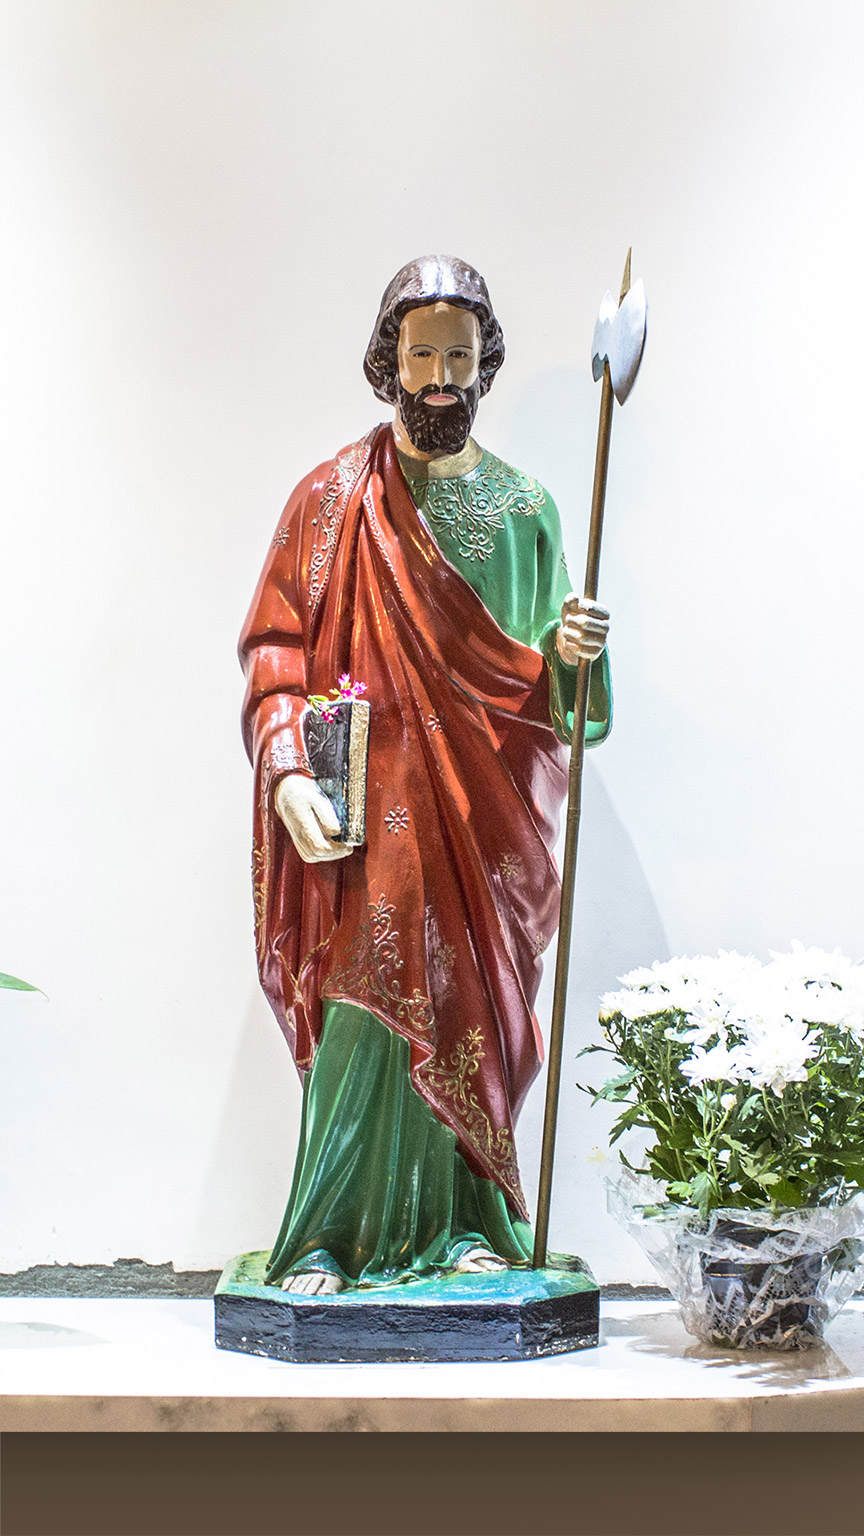 San Judas Tadeo; feligreses lo festejan en templo de la CDMX